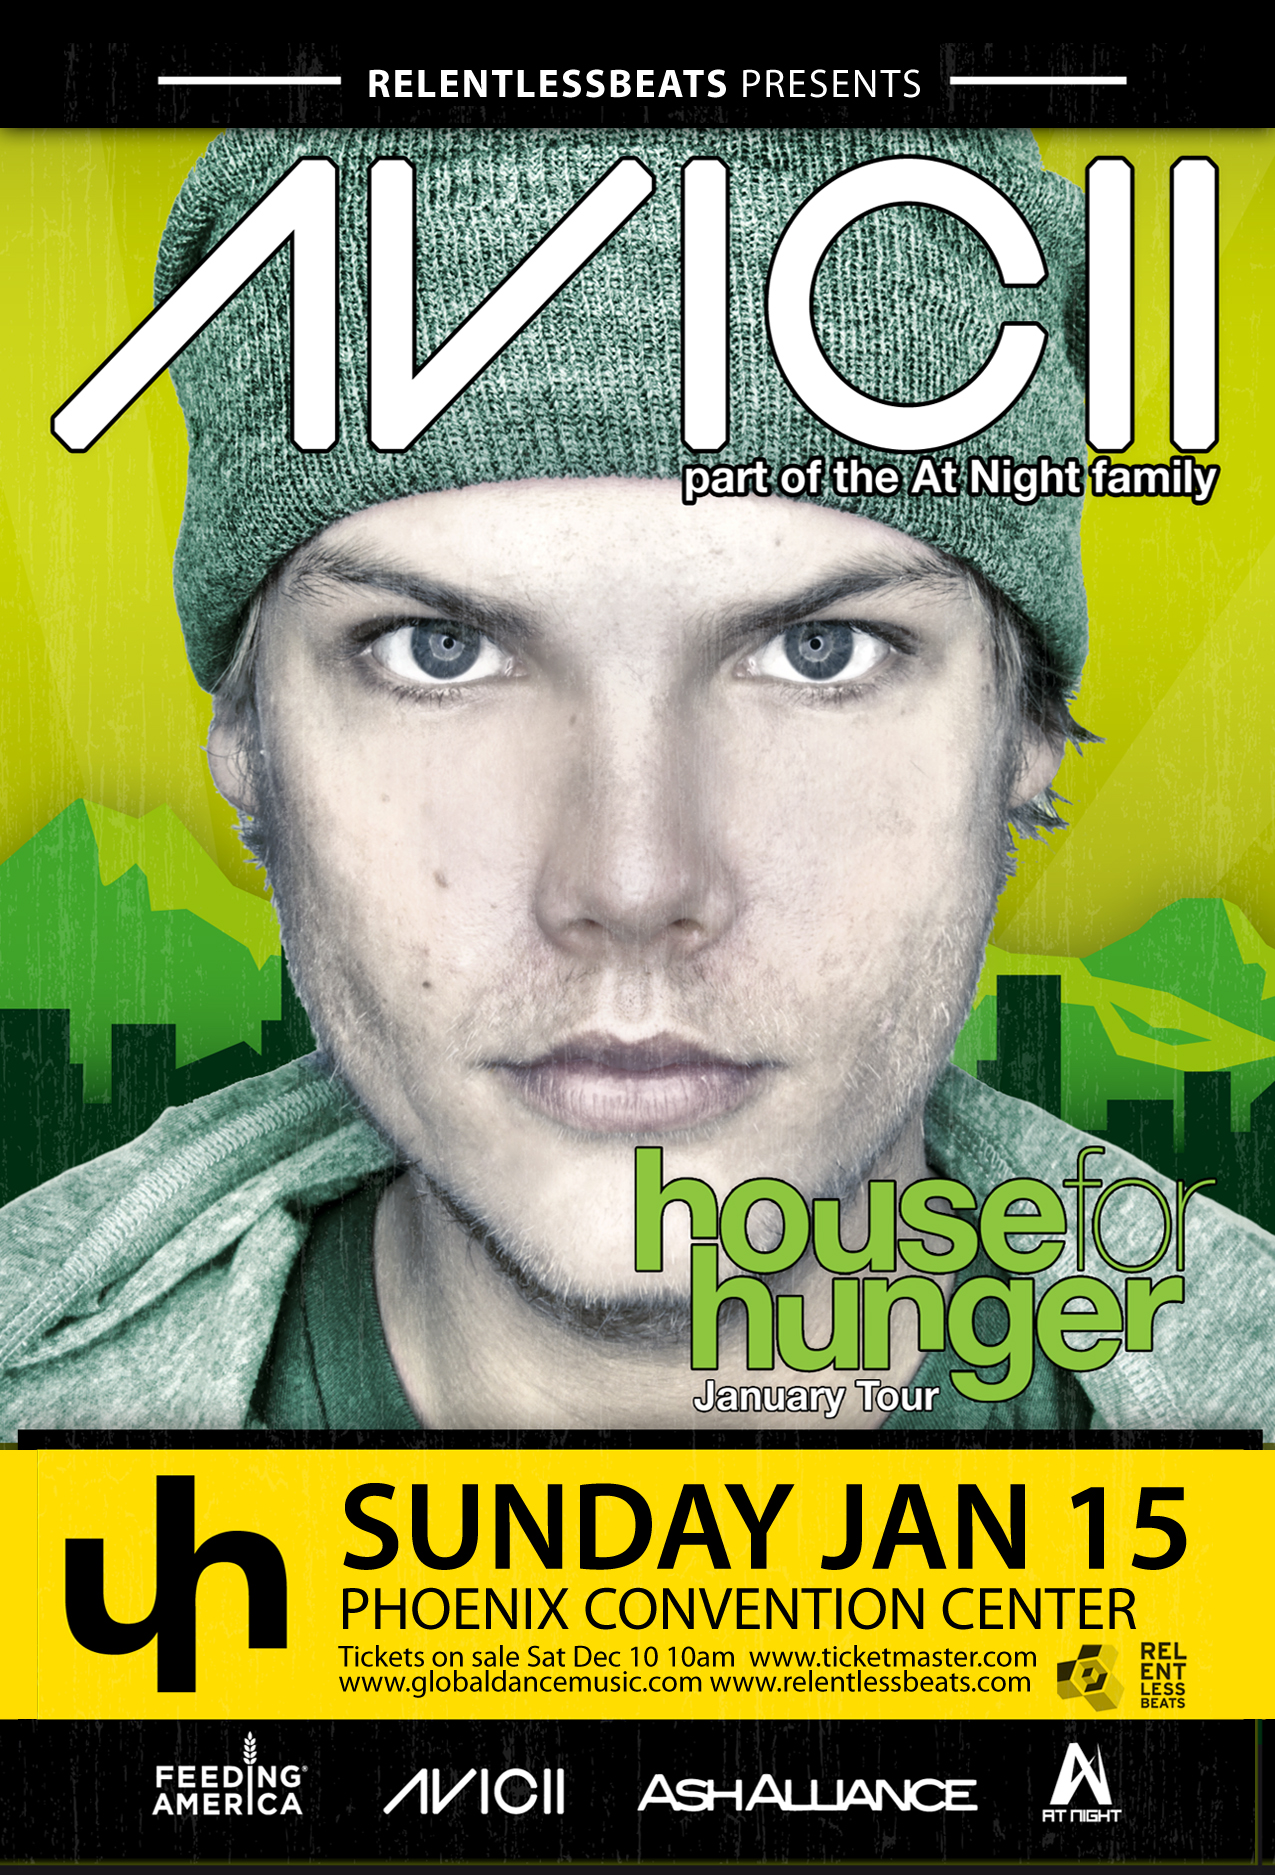 House for Hunger Tour ft. Avicii on 01/15/12